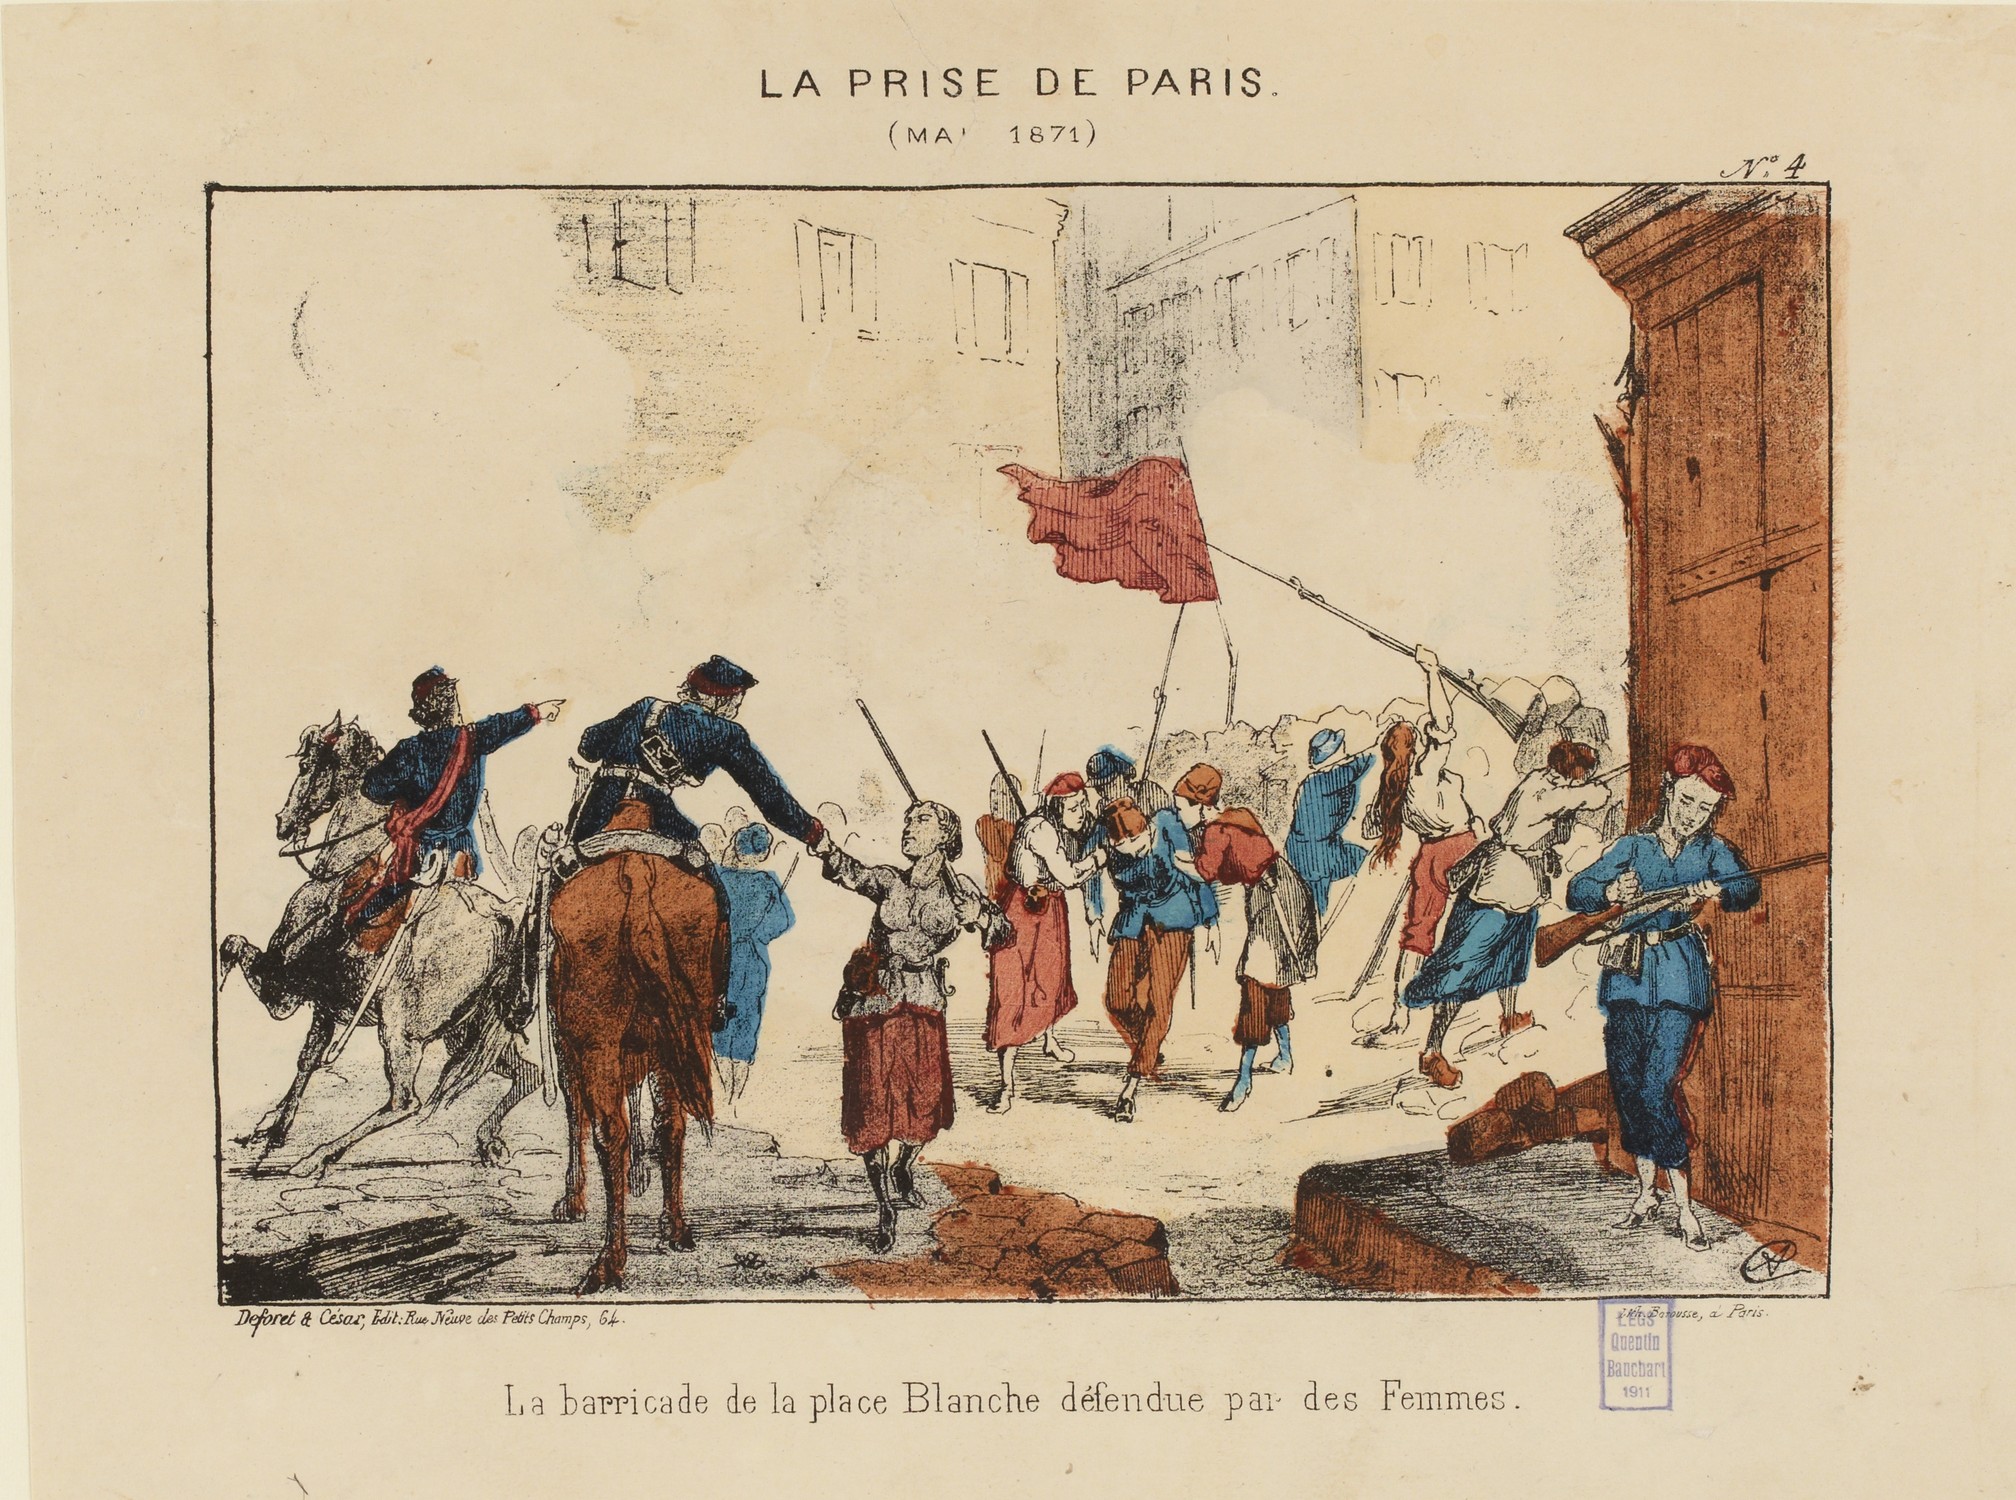 Semaine sanglante - Barricade de la place Blanche défendue par des femmes (Musée Carnavalet - Histoire de Paris)